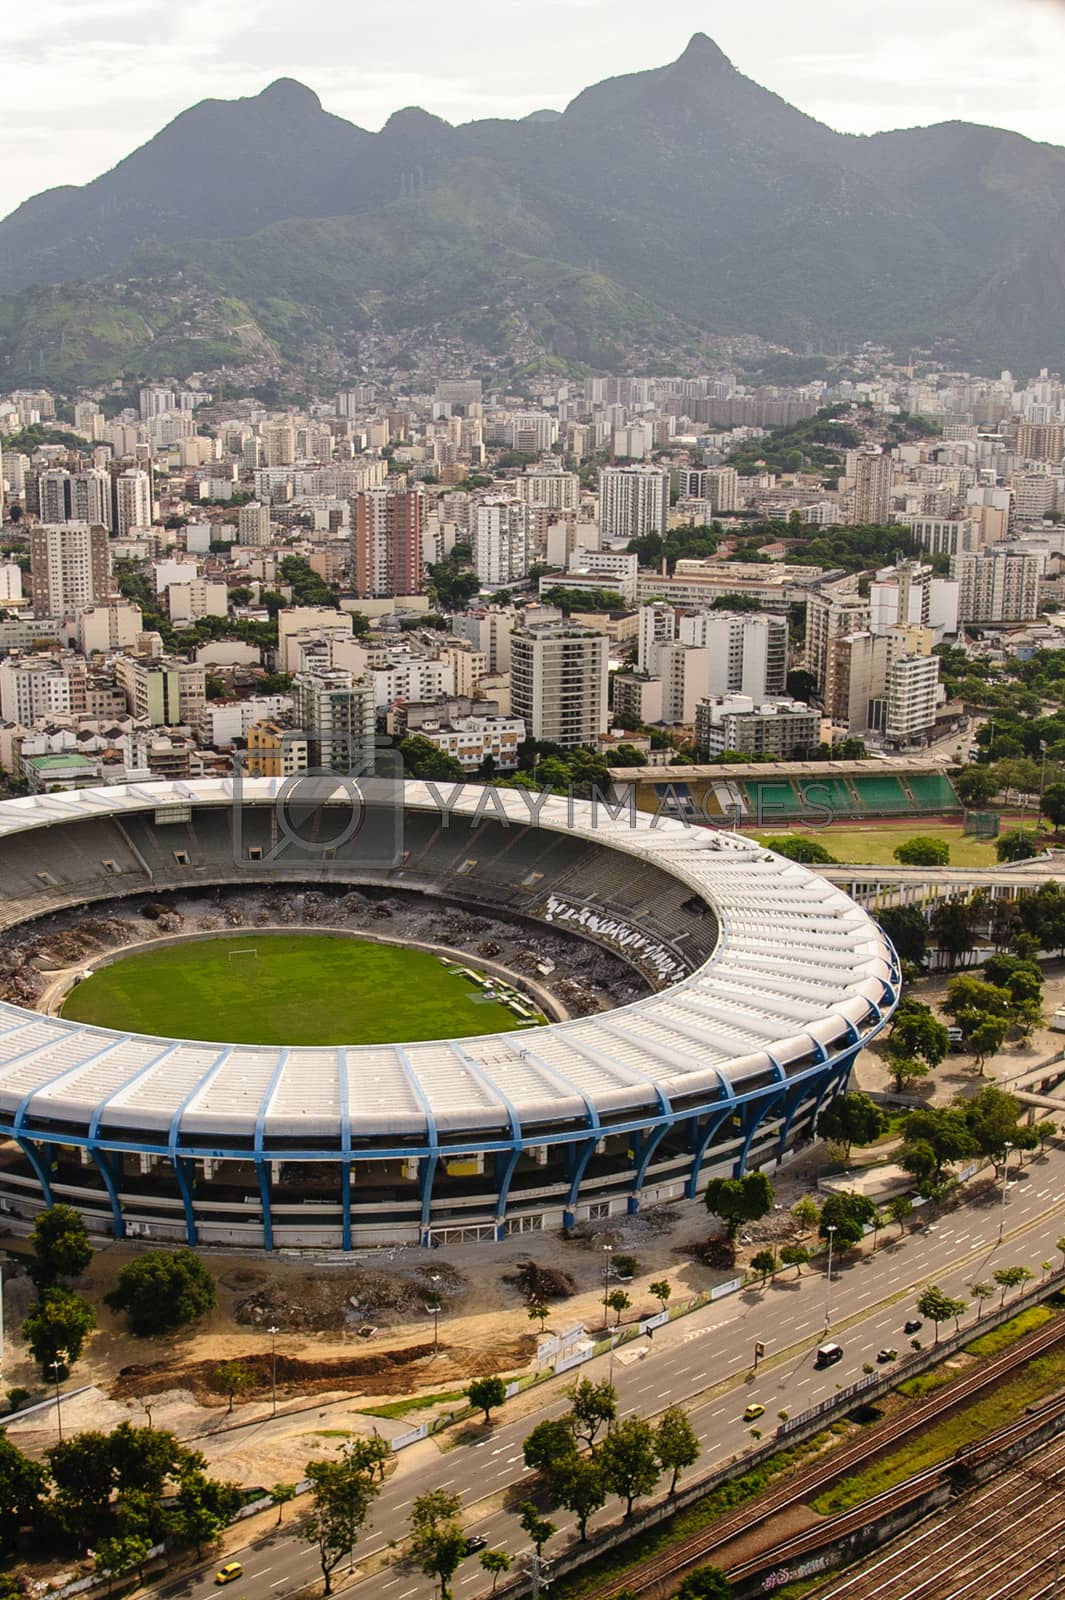 Royalty free image of Maracana Stadium by CelsoDiniz